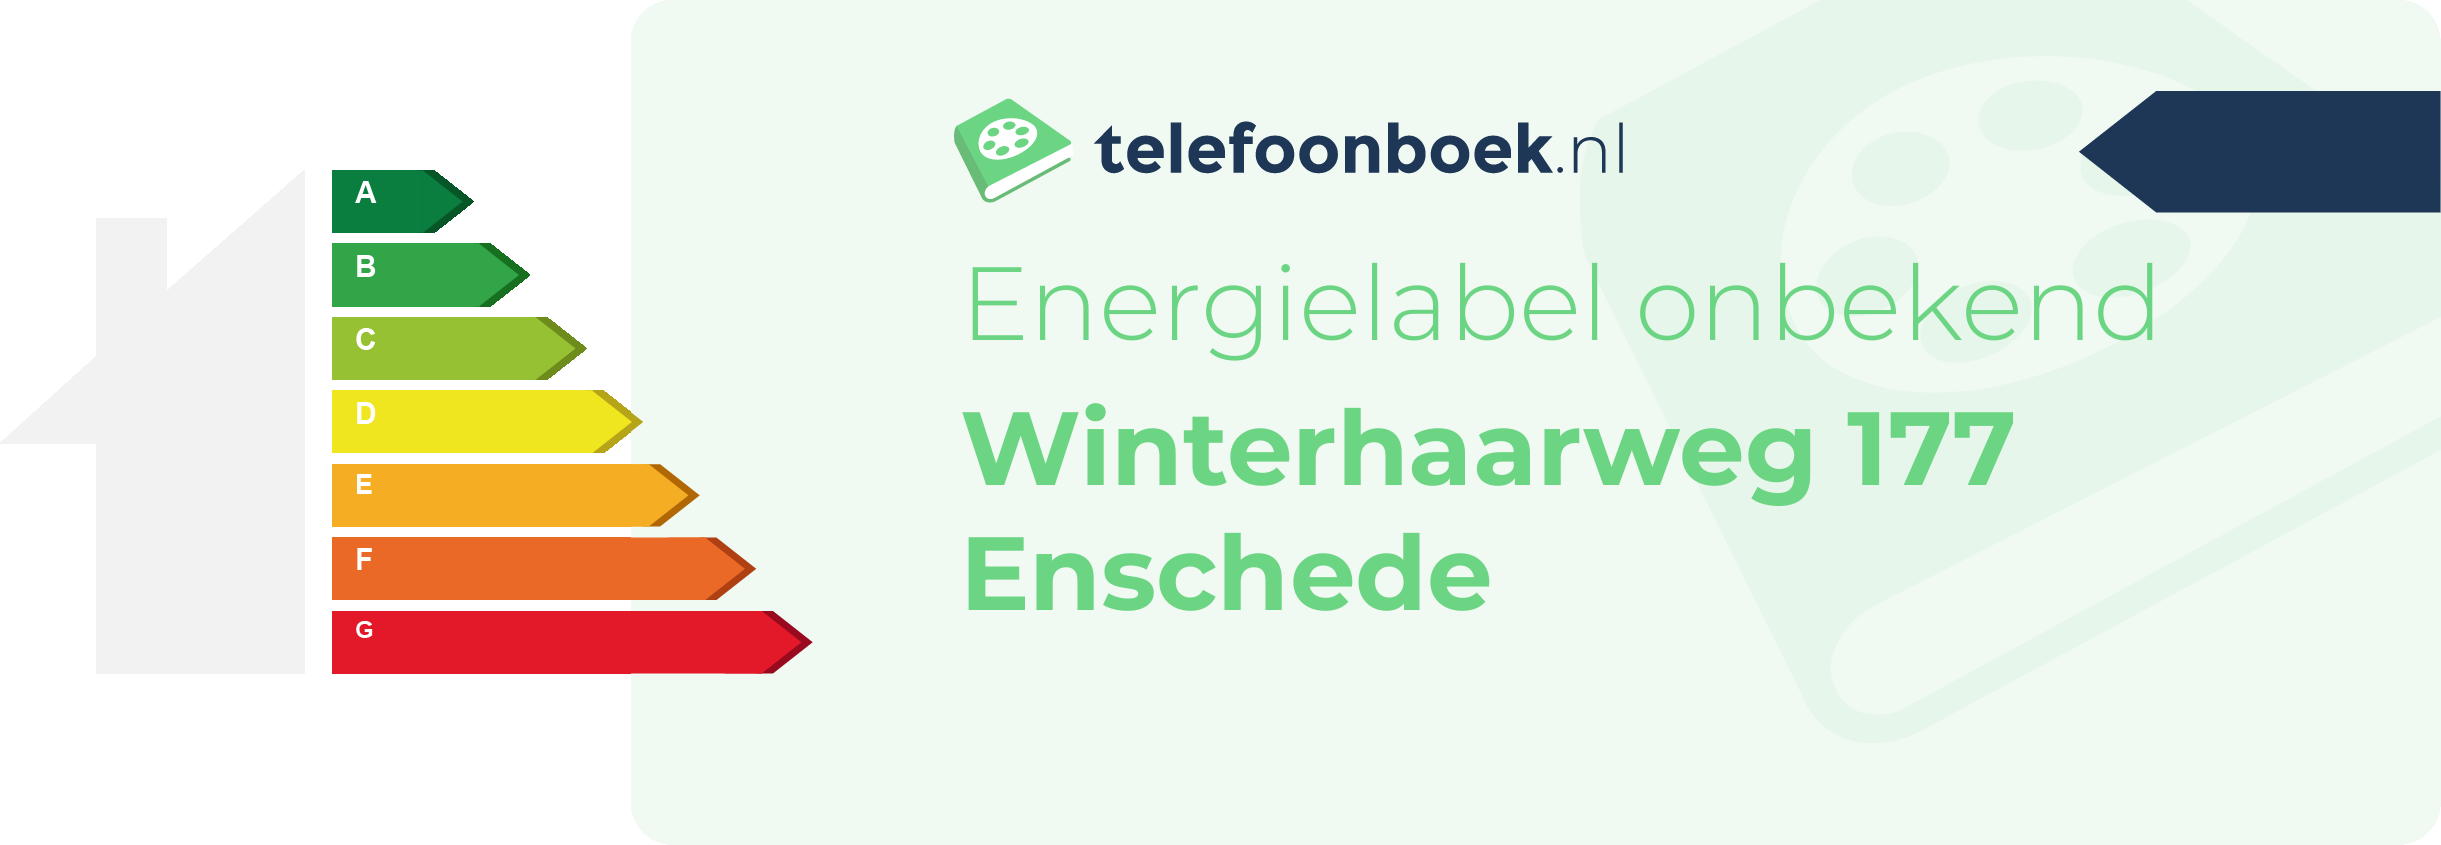 Energielabel Winterhaarweg 177 Enschede